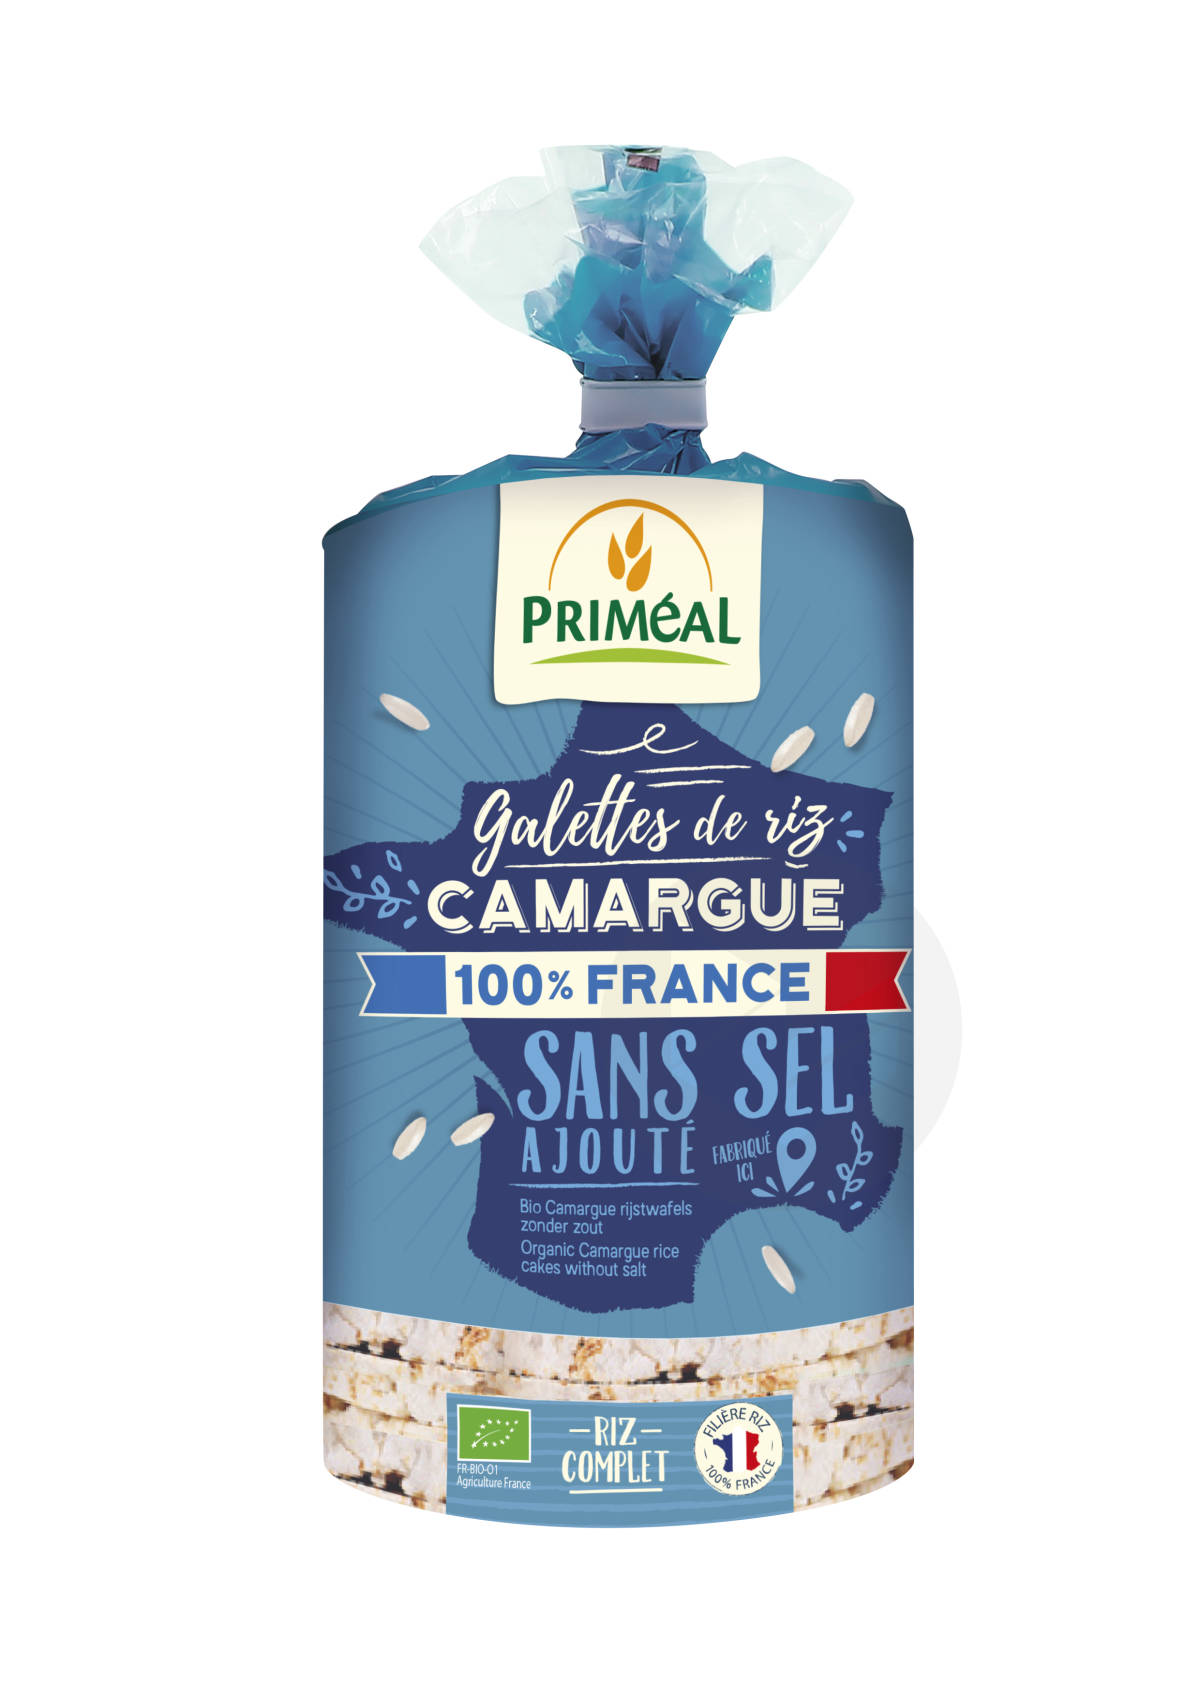 Galettes de riz Camargue sans sel bio 130g